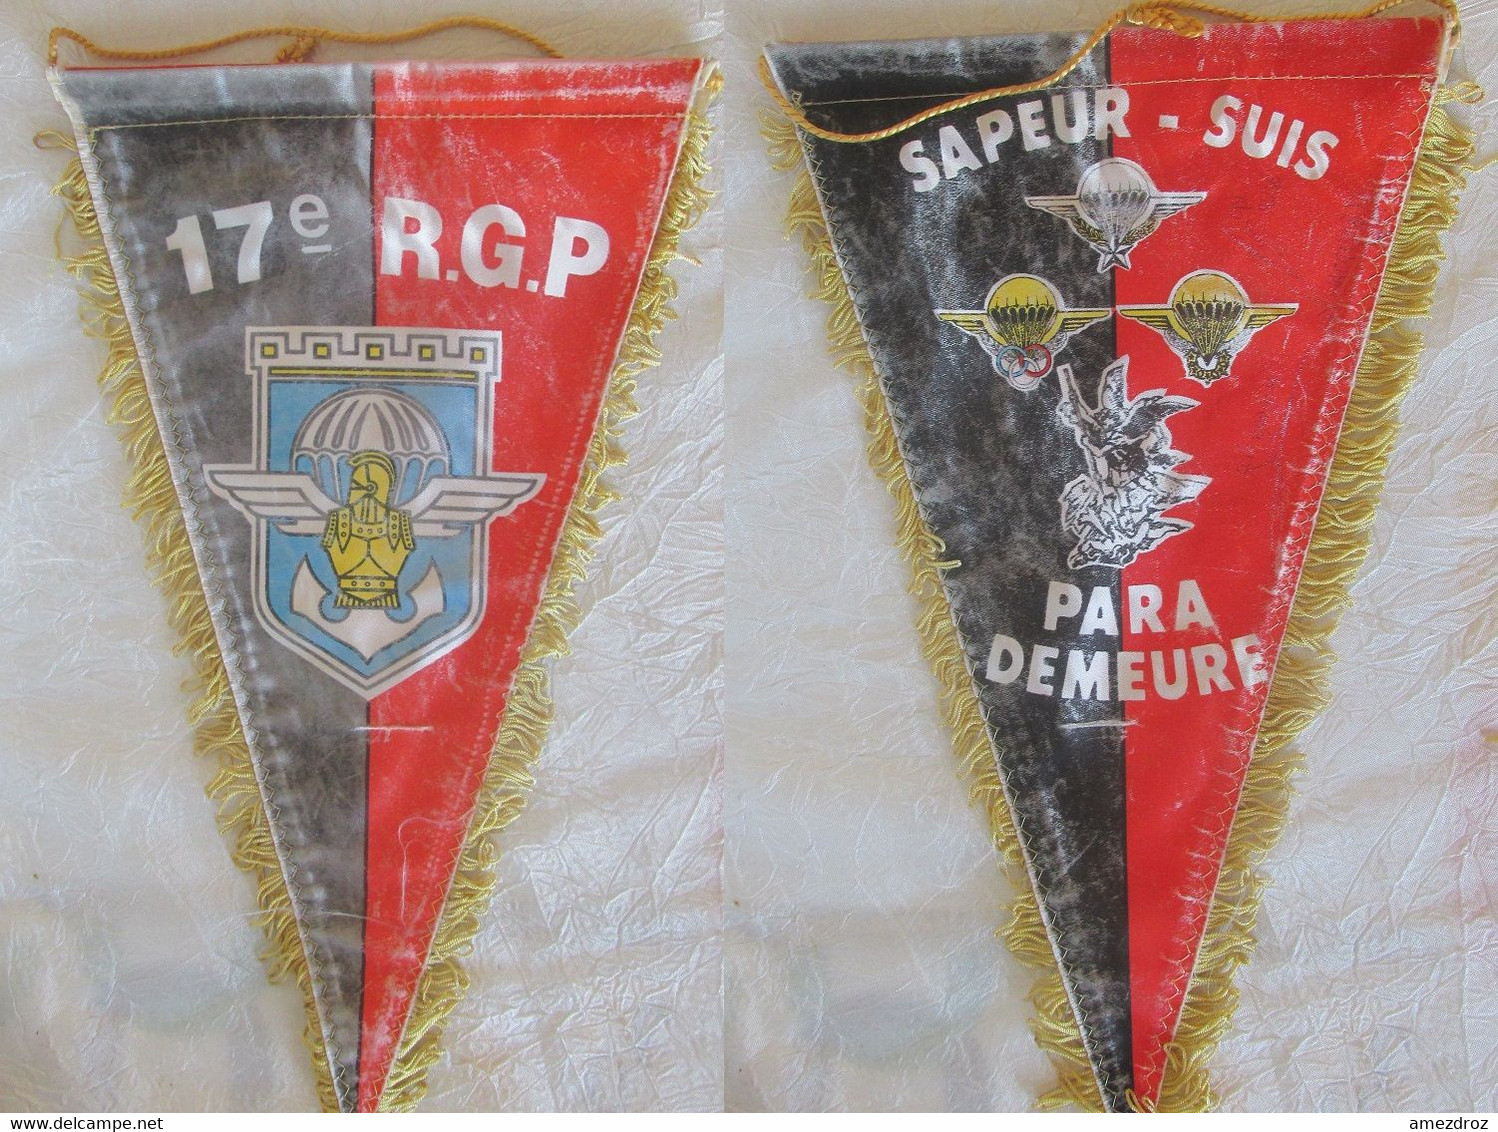 Fanion Militaire - 17e R.G.P Sapeur Suis Paras Demeure - Usé - Flaggen